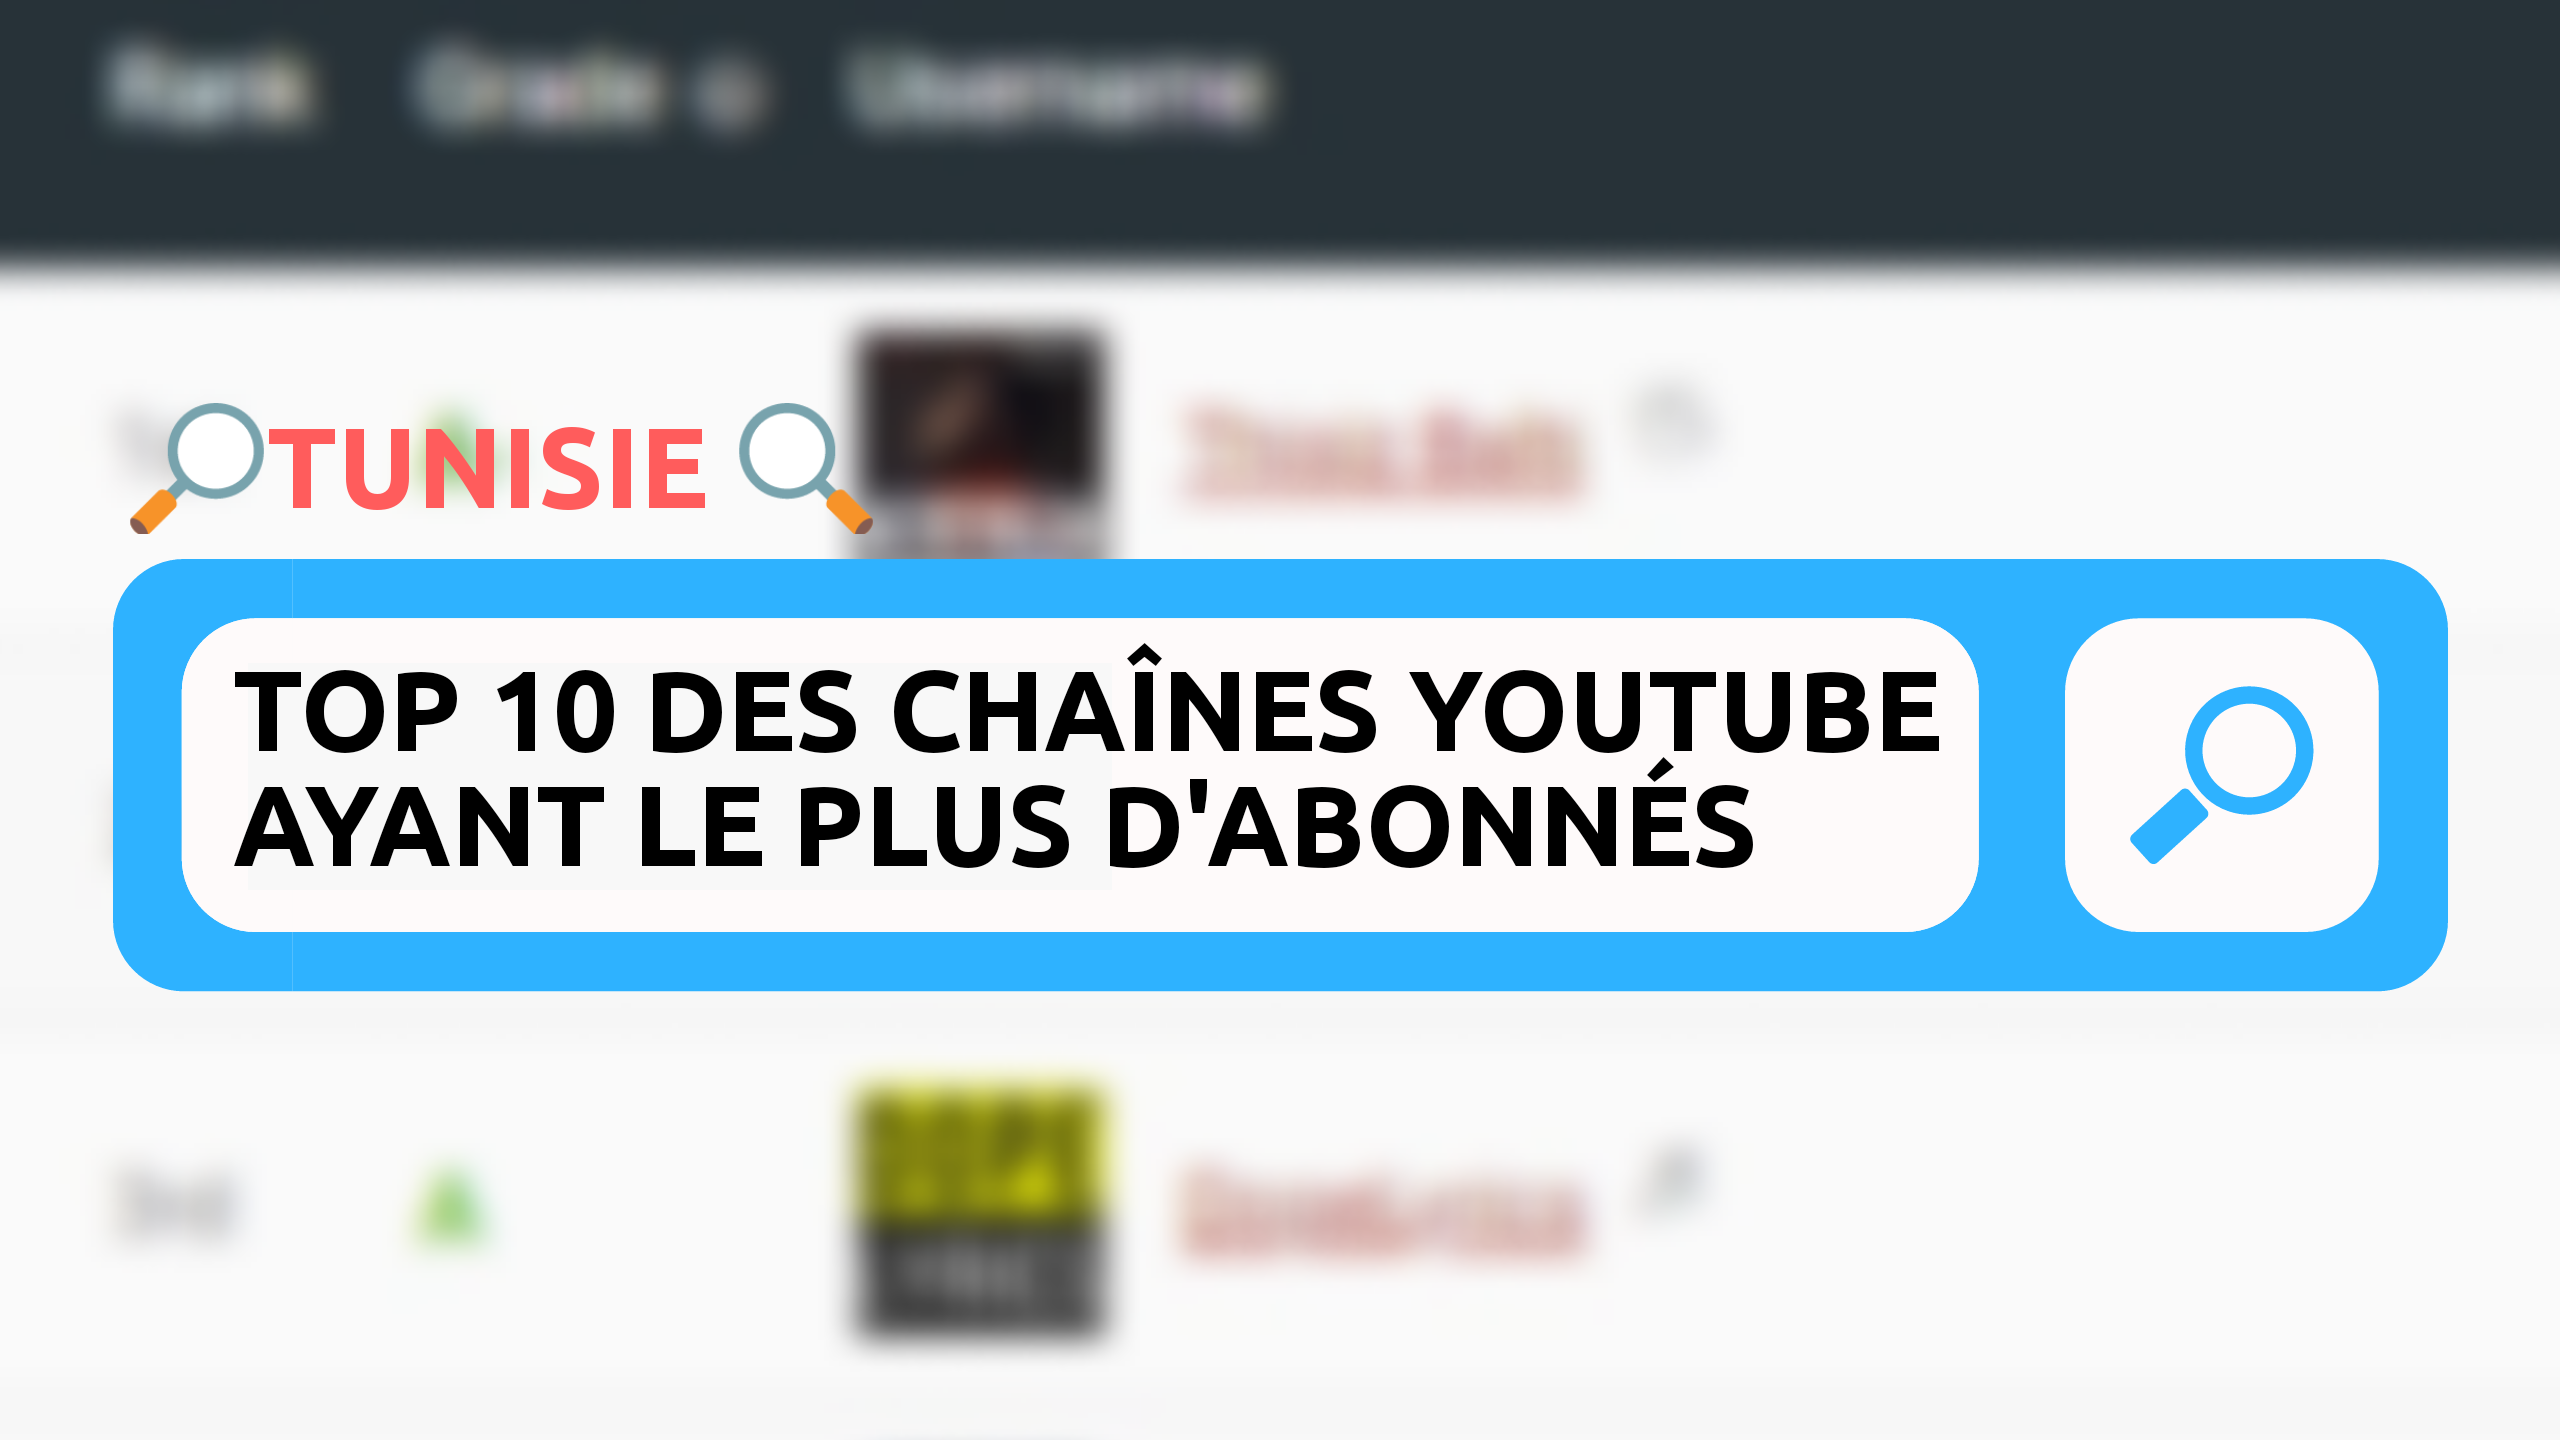  Tunisie : Top 10 des chaînes YouTube ayant le plus d’abonnés